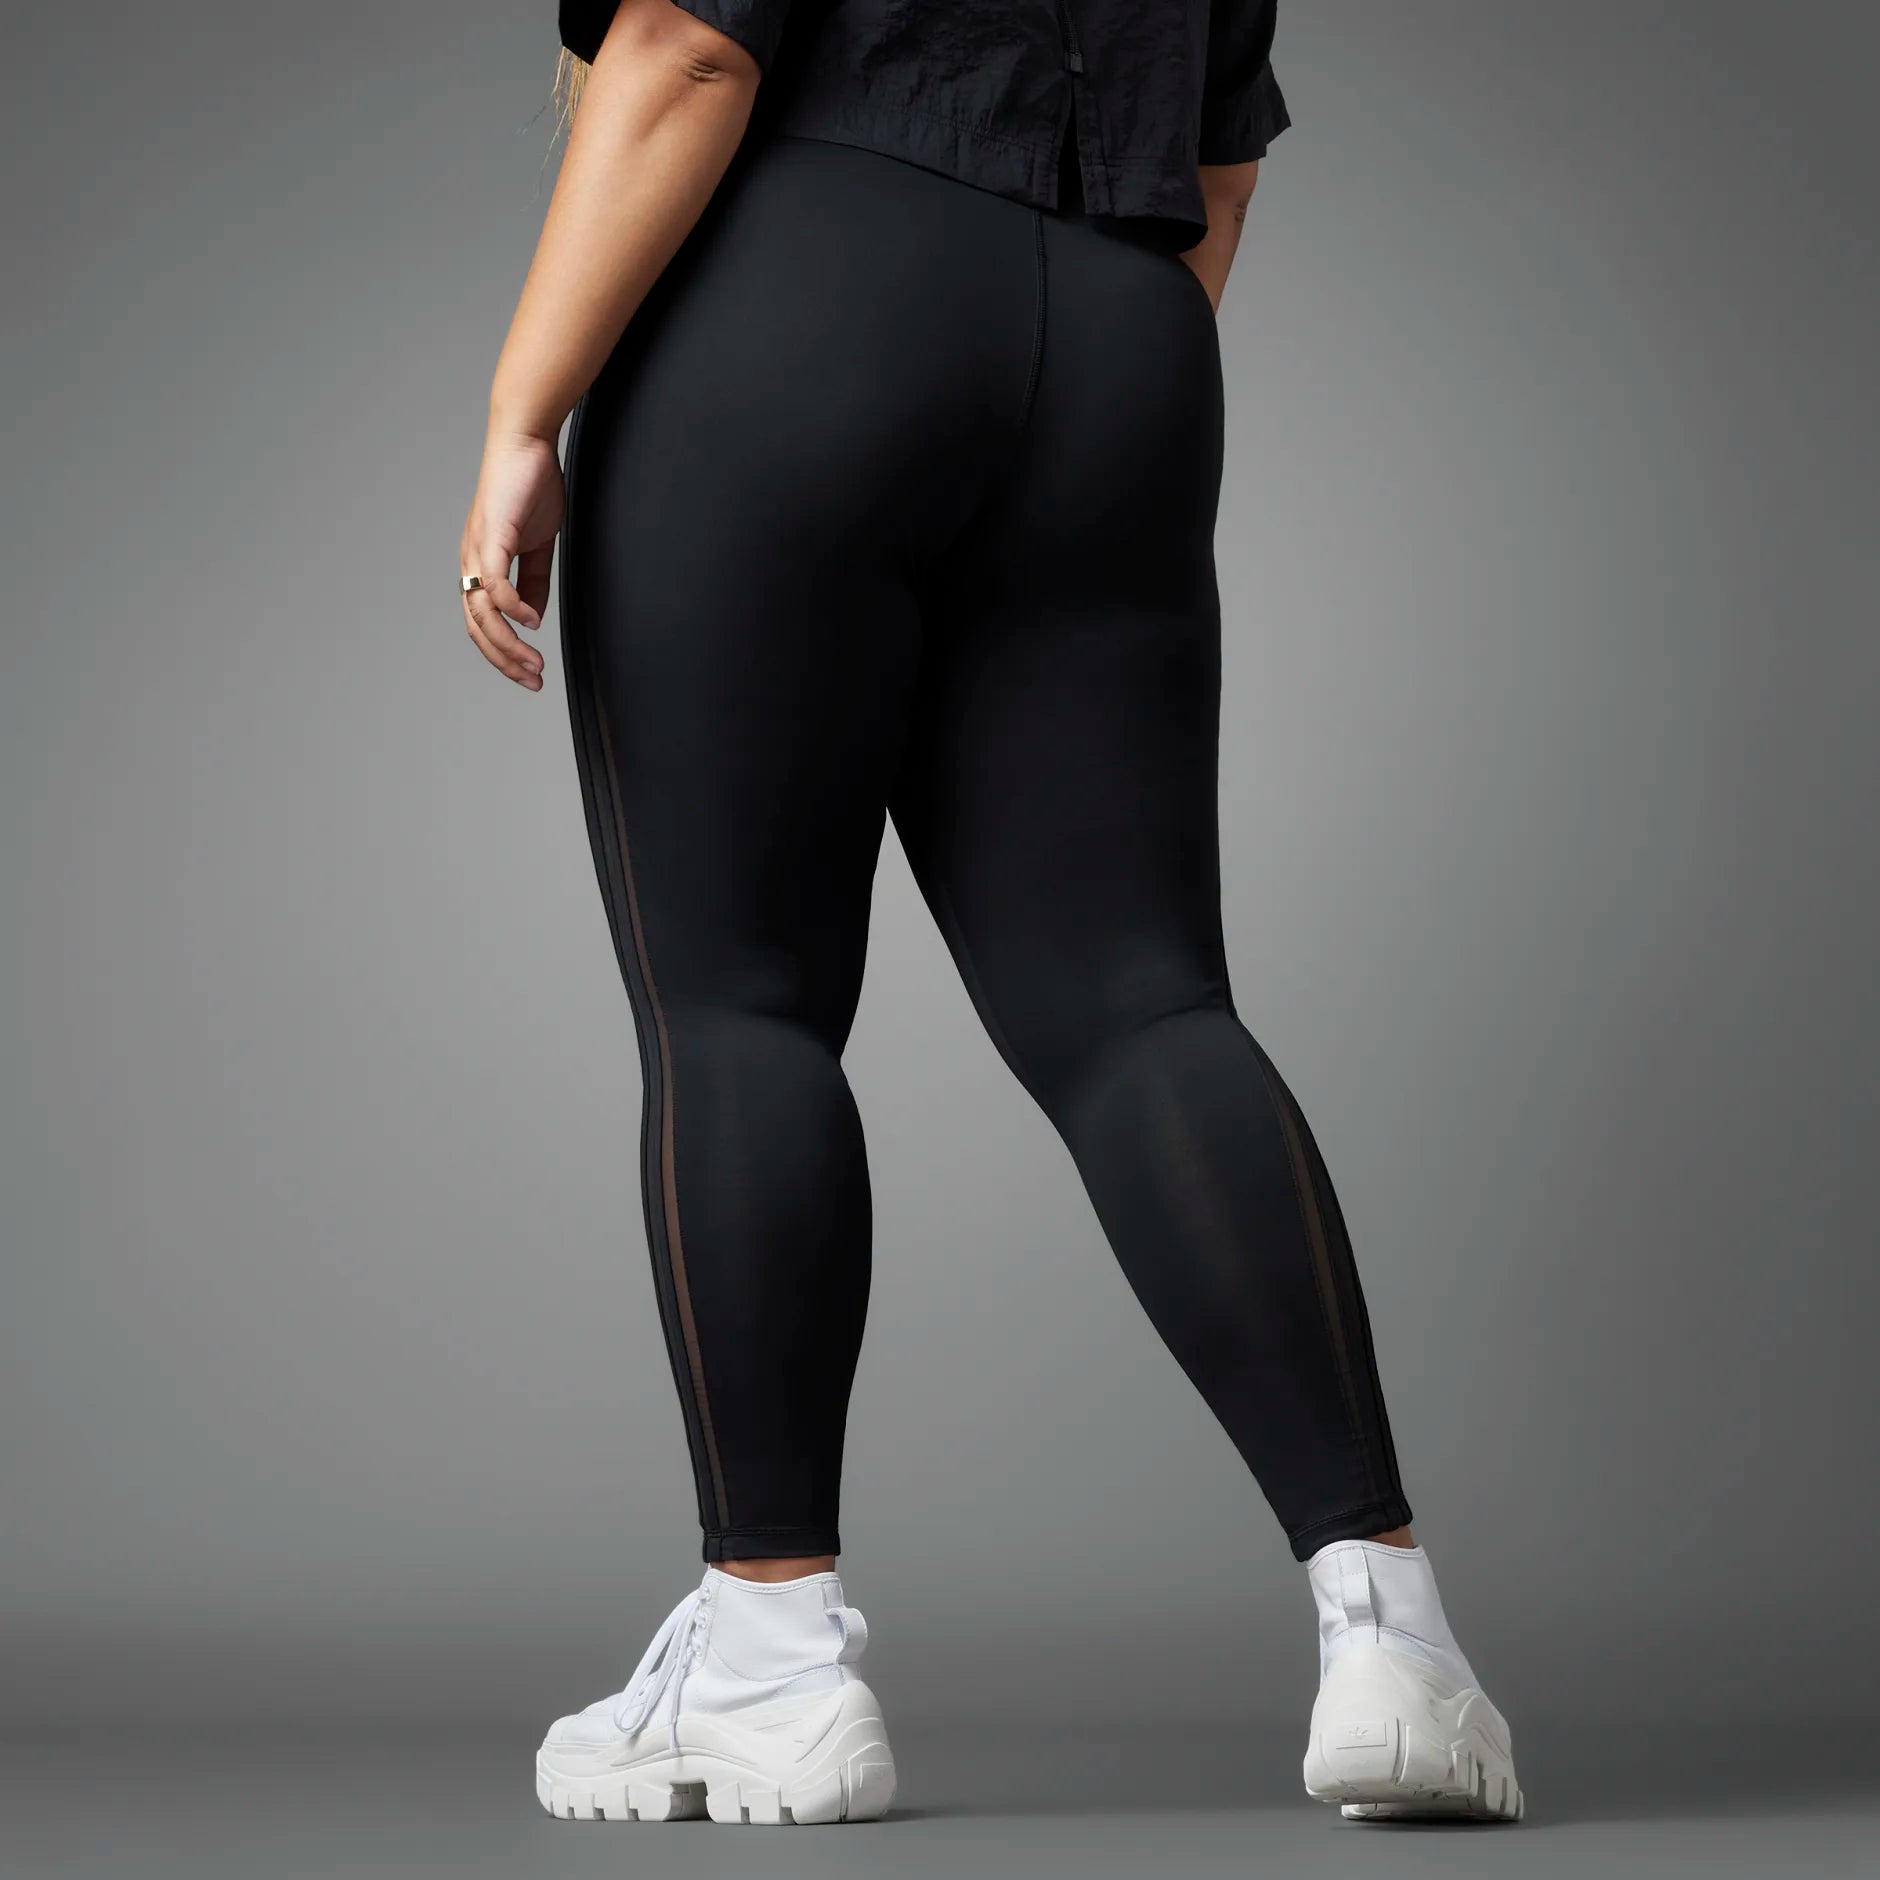 Adidas Originals Womens Class Of 72 Leggings (Plus Size) - Black